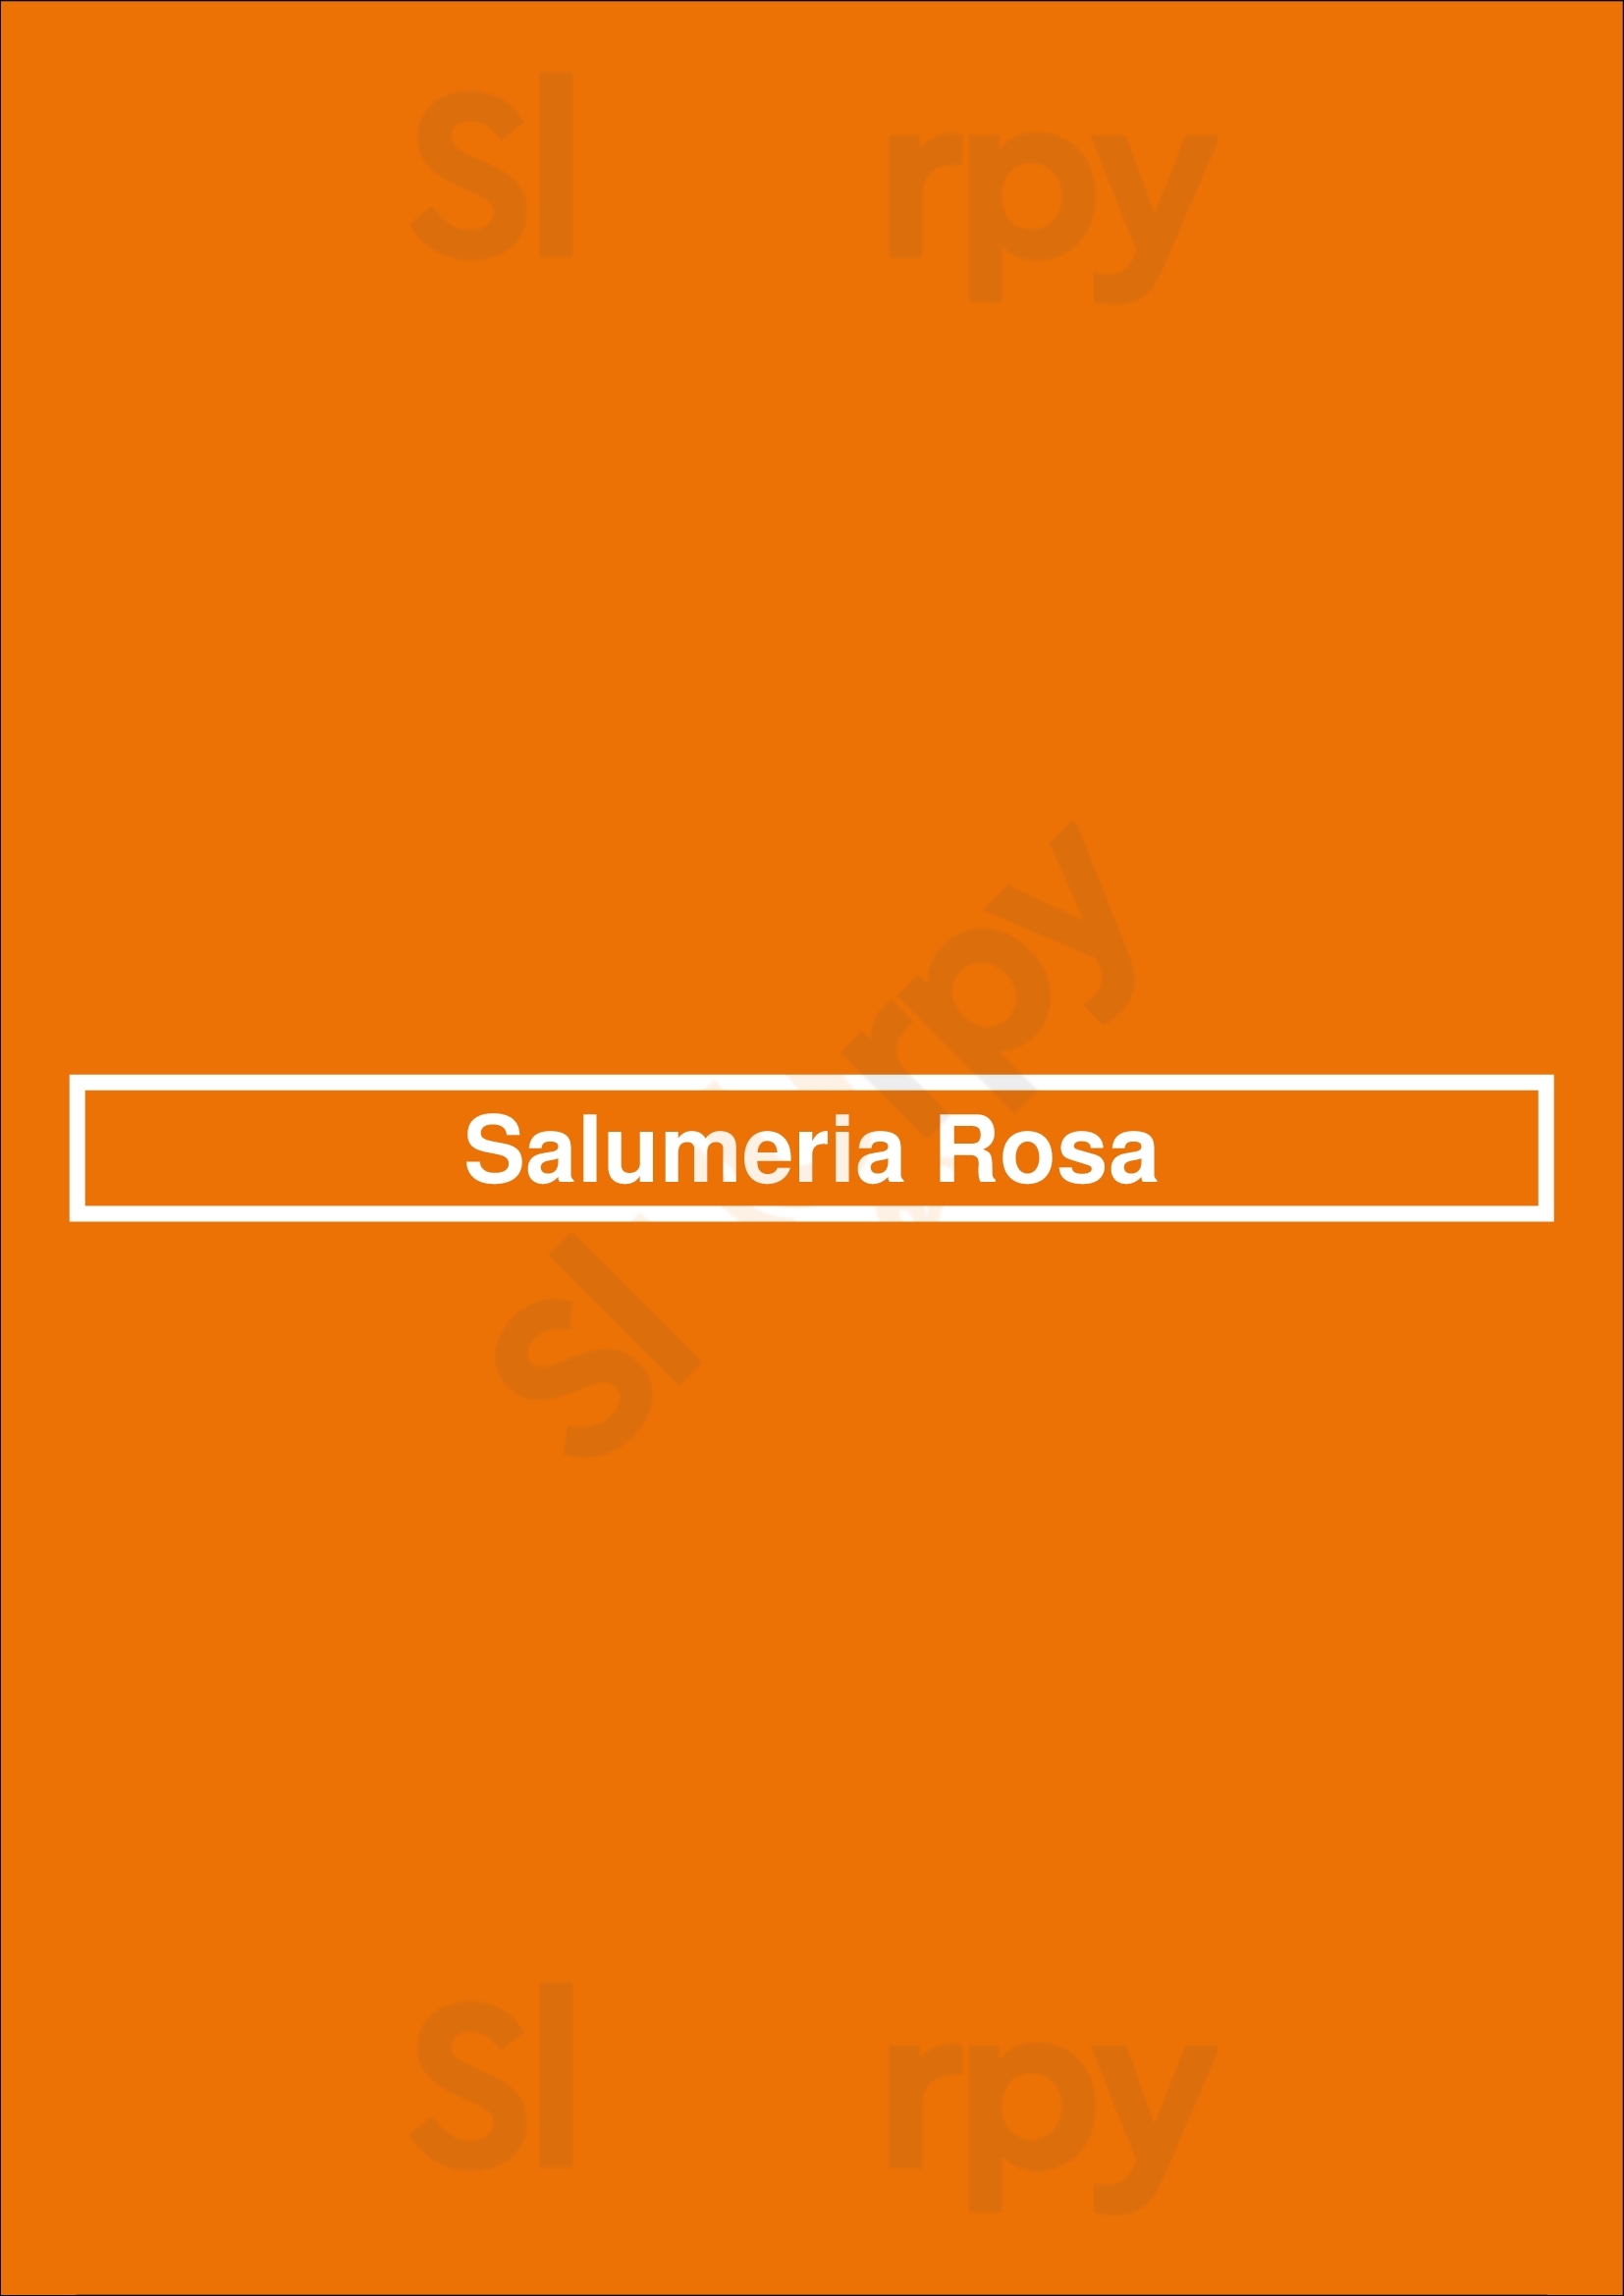 Salumeria Rosa Berlin Menu - 1